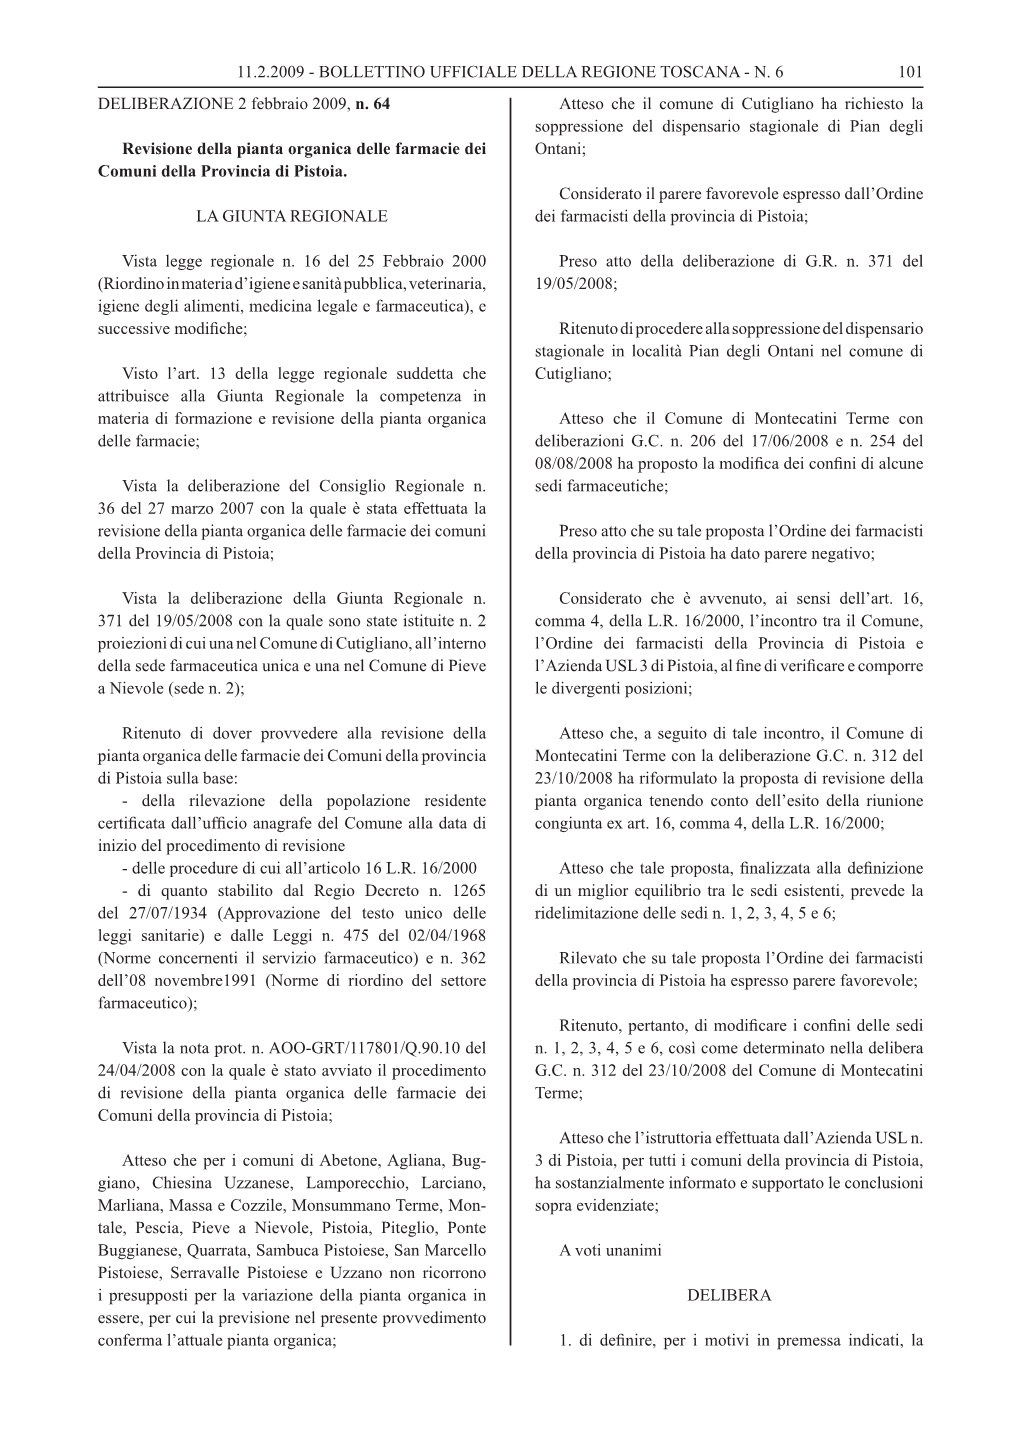 N. 6 DELIBERAZIONE 2 Febbraio 2009, N. 64 Revisione Della Pianta Or